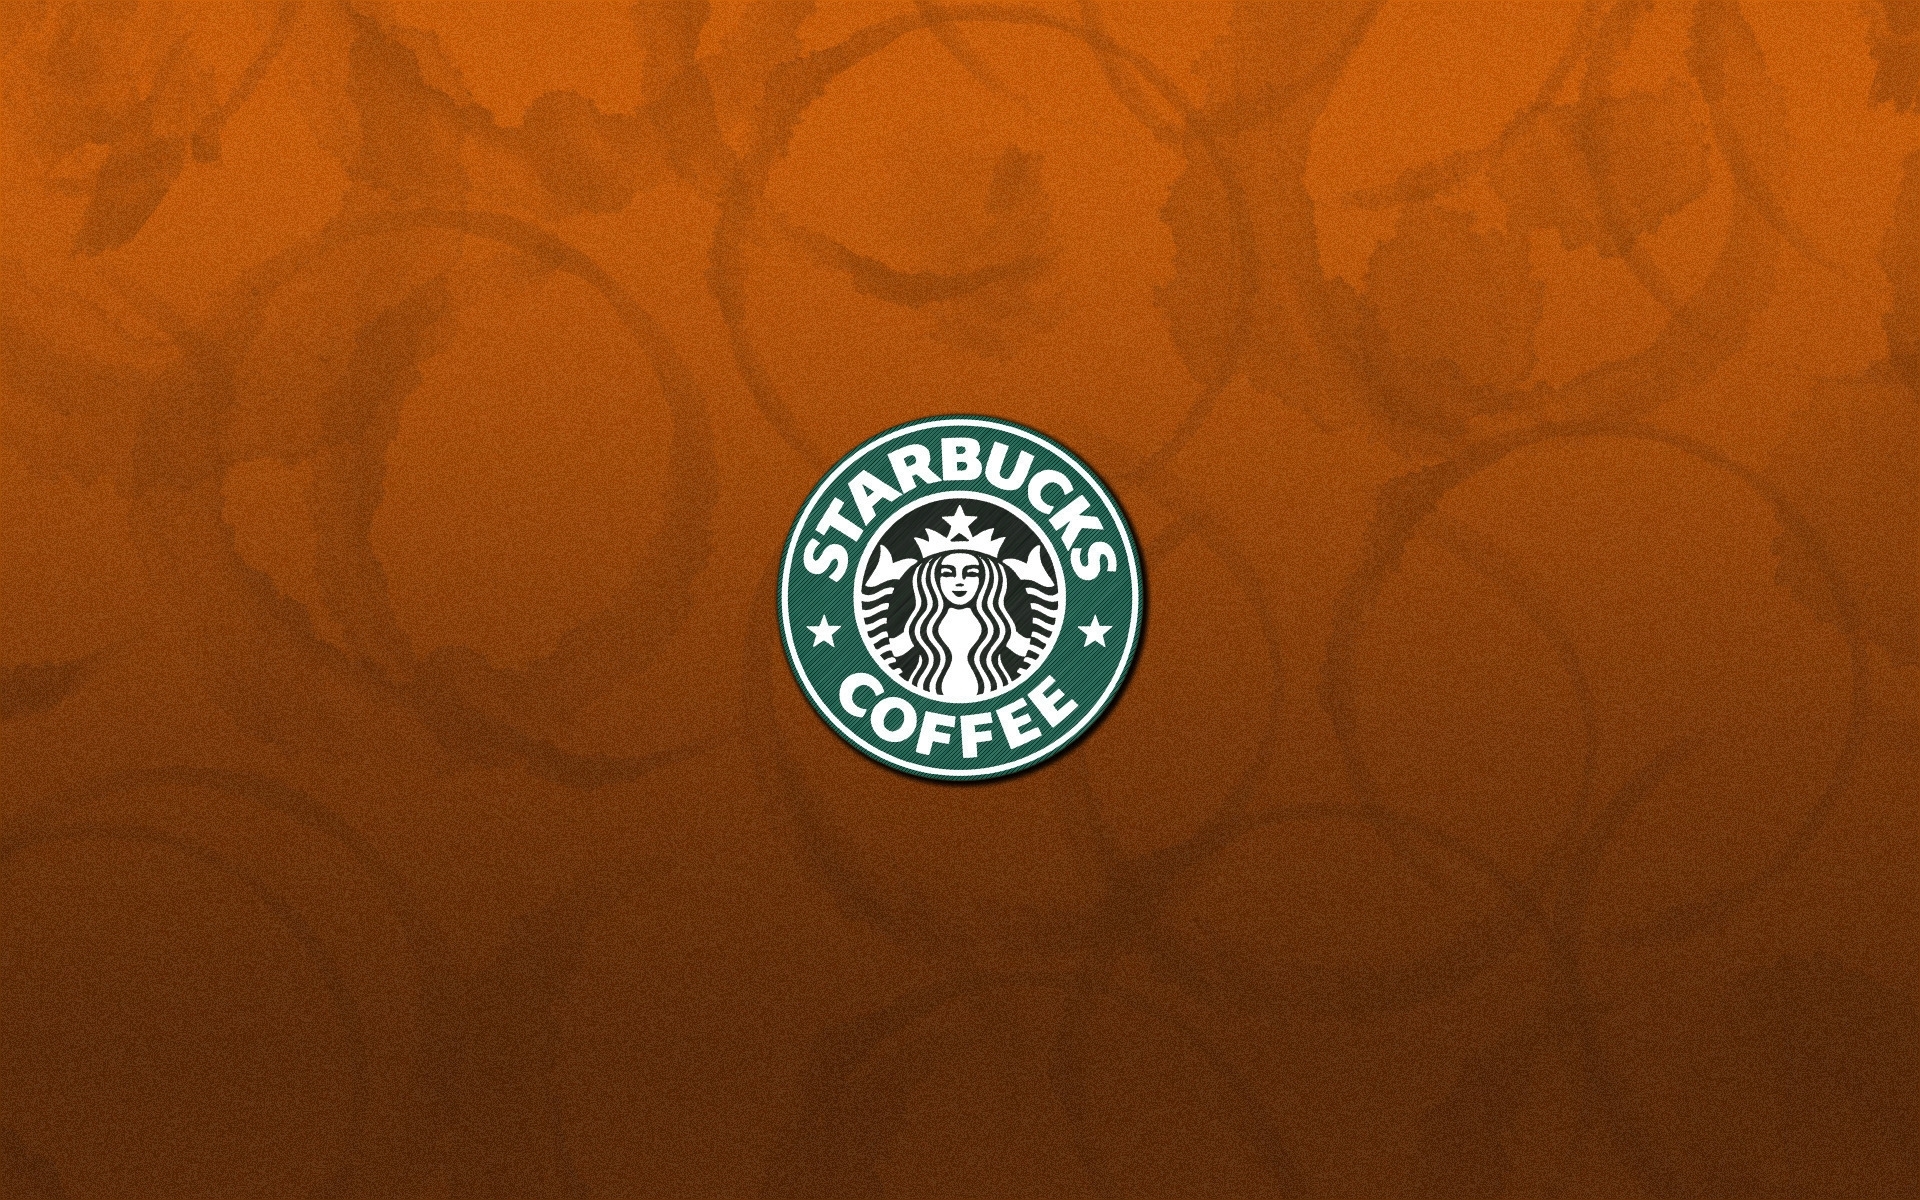 Hình nền Starbucks Coffee Logo trên vải cam: Bạn yêu thích Starbucks Coffee không? Hãy xem hình nền Starbucks Coffee Logo trên vải cam này để cảm nhận một sự kết hợp tuyệt vời giữa màu cam tươi sáng và biểu tượng quen thuộc của thương hiệu nổi tiếng này. Hãy cùng thưởng thức hình ảnh tuyệt đẹp này ngay!